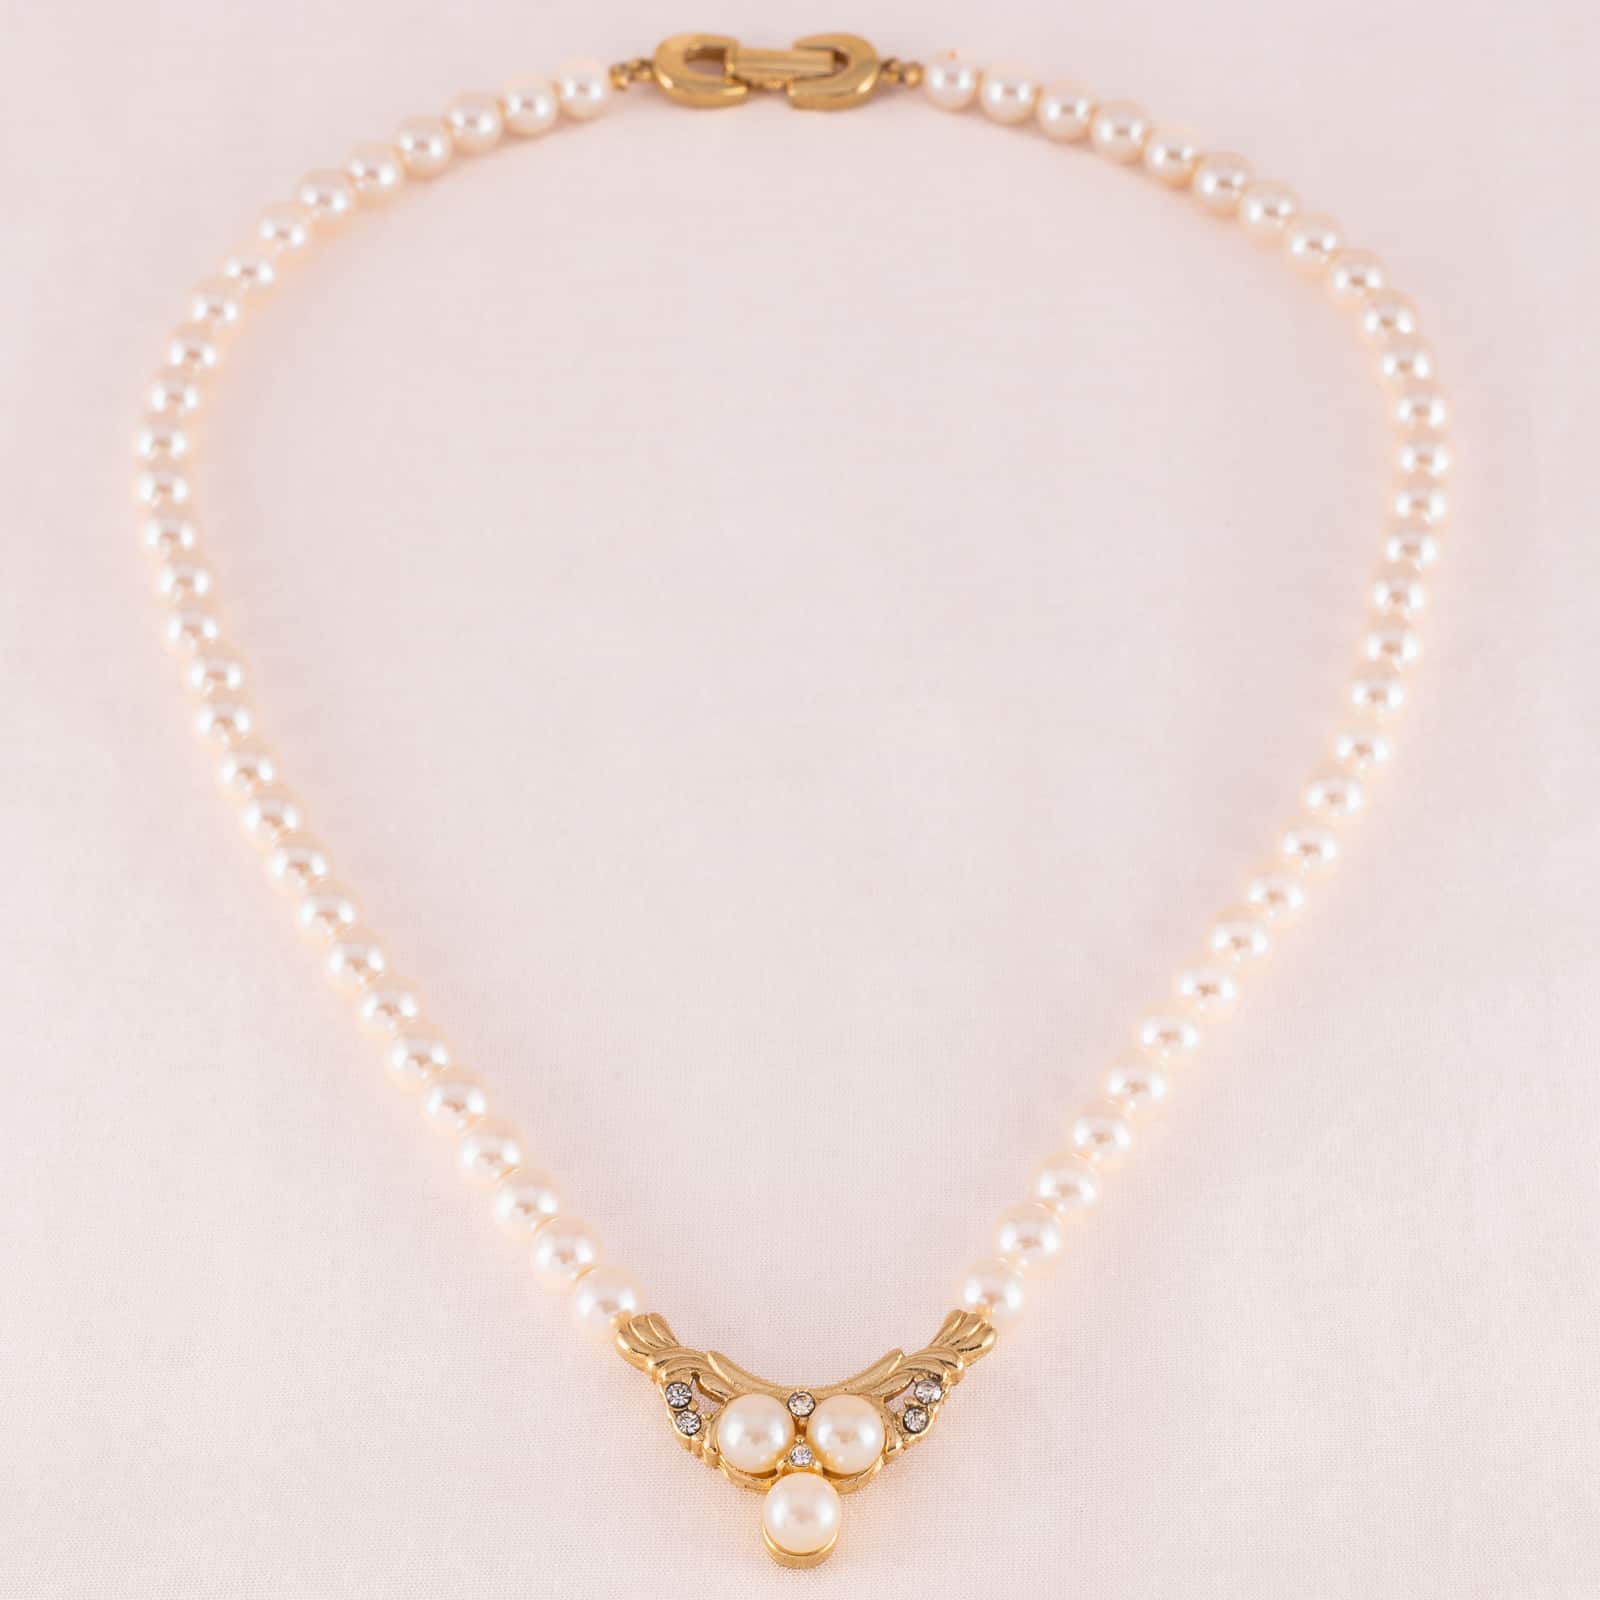 Vintage Richelieu Demi Parure Pearl Necklace, Bracelet, & Clip Earrings Set  | eBay